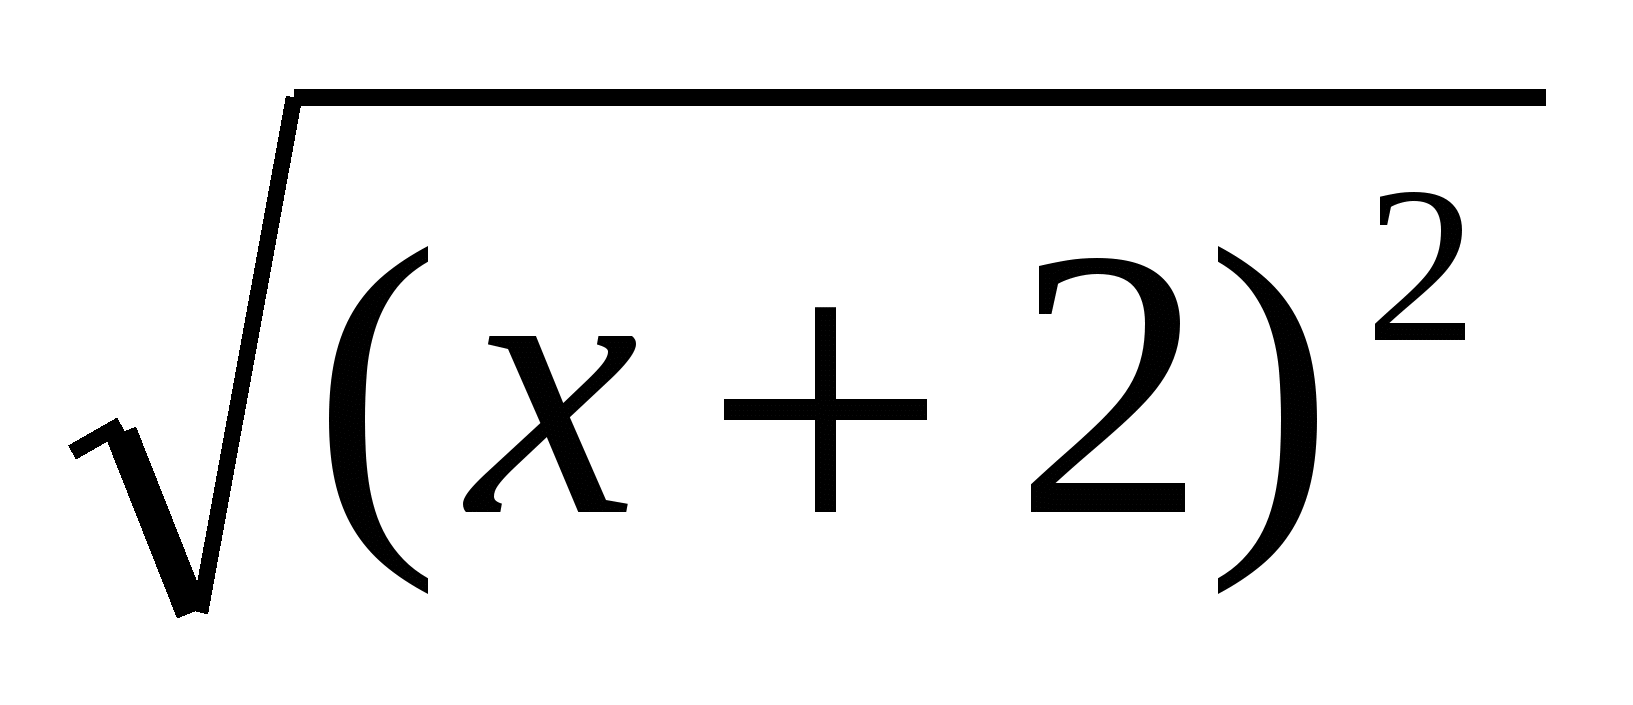 Конспект урока математики на тему Логарифмические уравнения (11 класс)